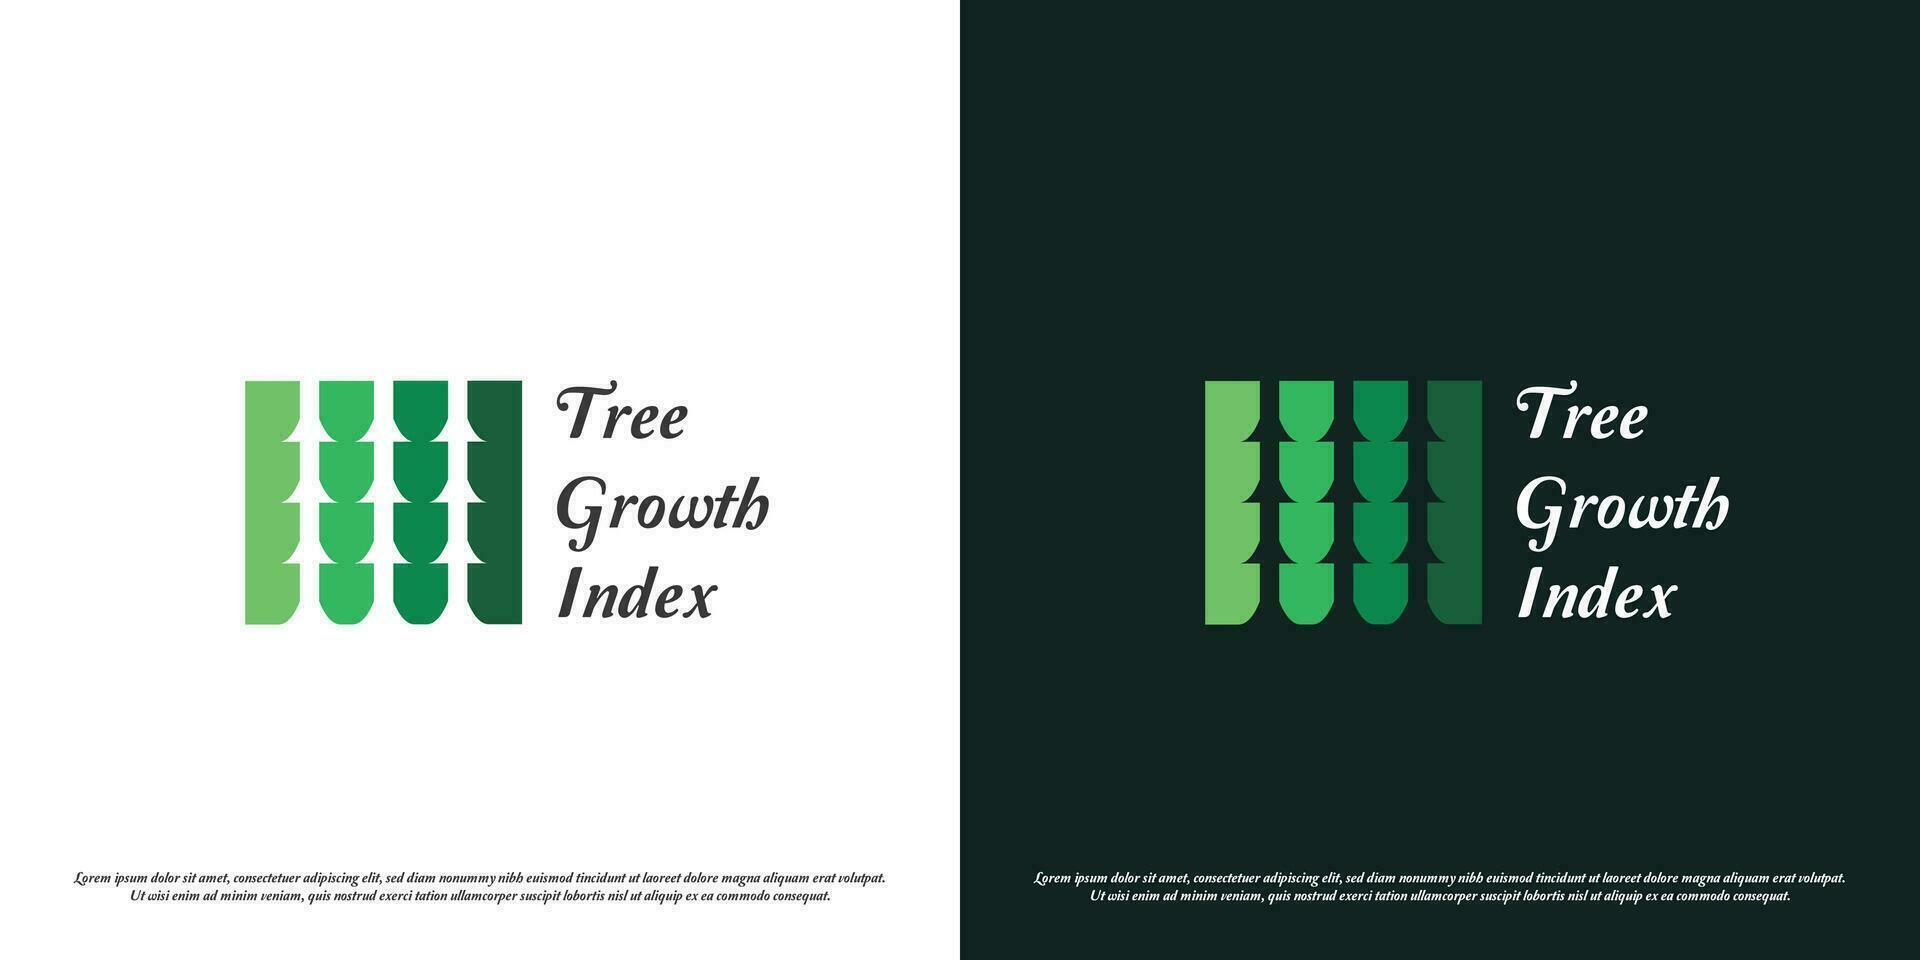 verde bar logo diseño ilustración. silueta grafico índice Estadísticas gráfico diagrama crecimiento desarrollo planta árbol bosque ambiente eco bio negocio compañía. moderno mínimo casual sencillo icono símbolo. vector